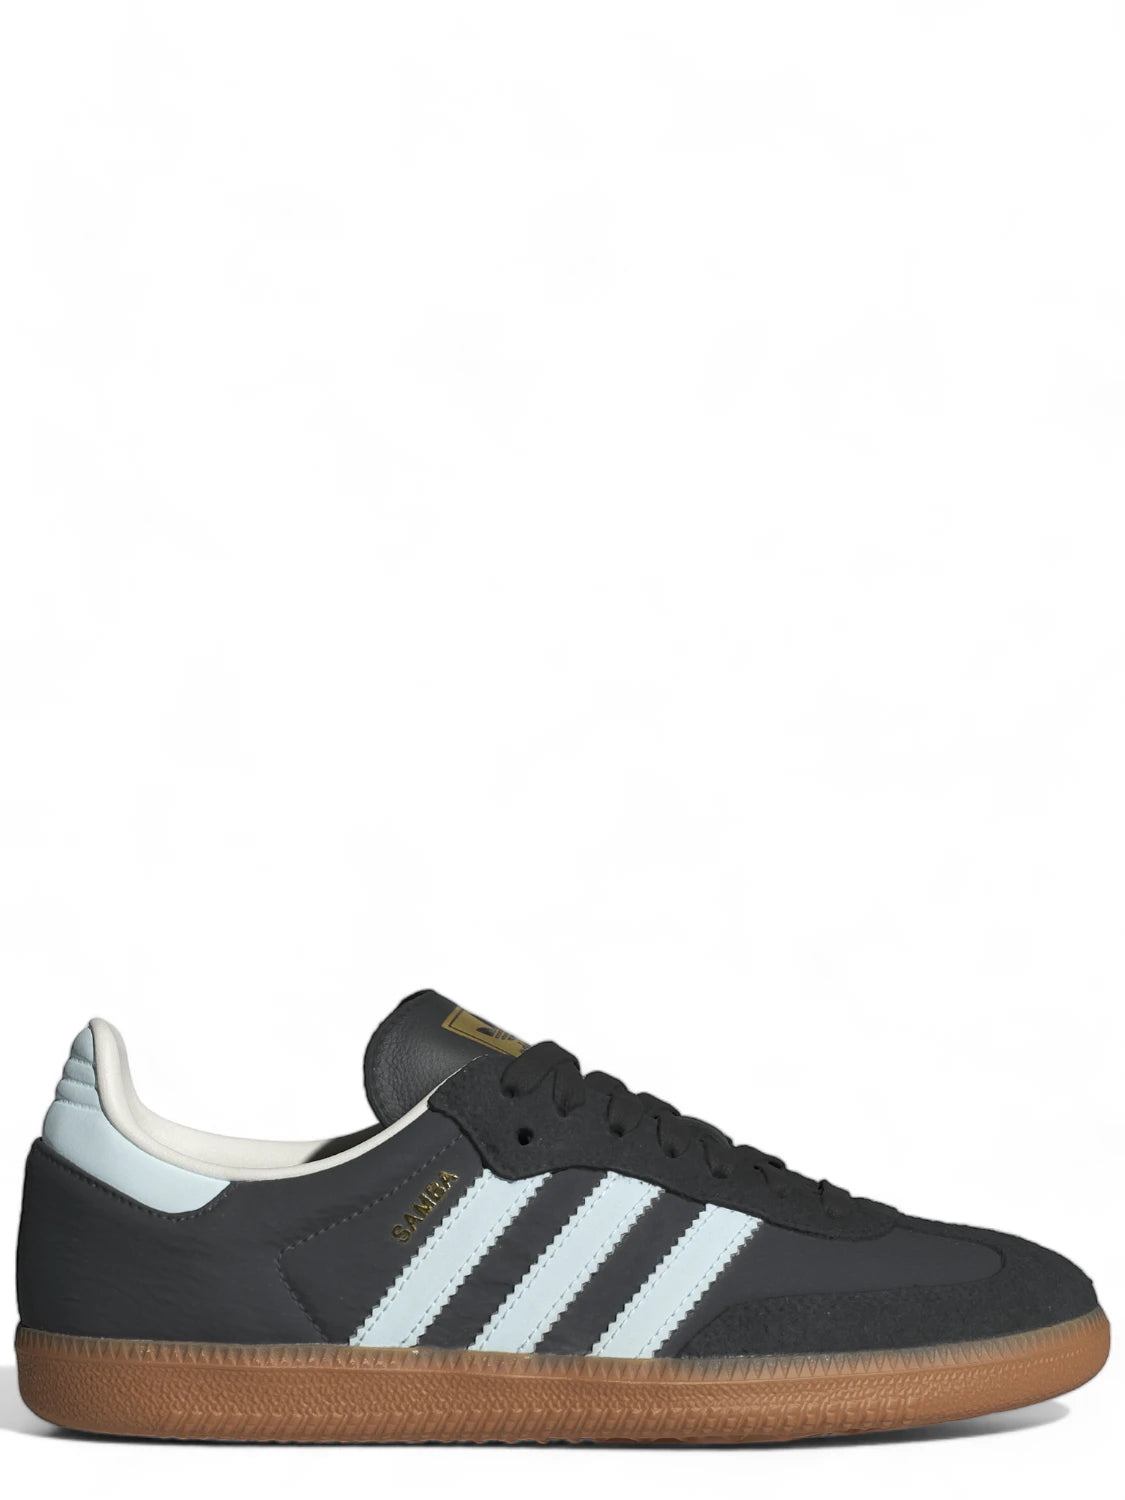 Adidas Samba OG W Grigio-Adidas Originals-Sneakers-Vittorio Citro Boutique